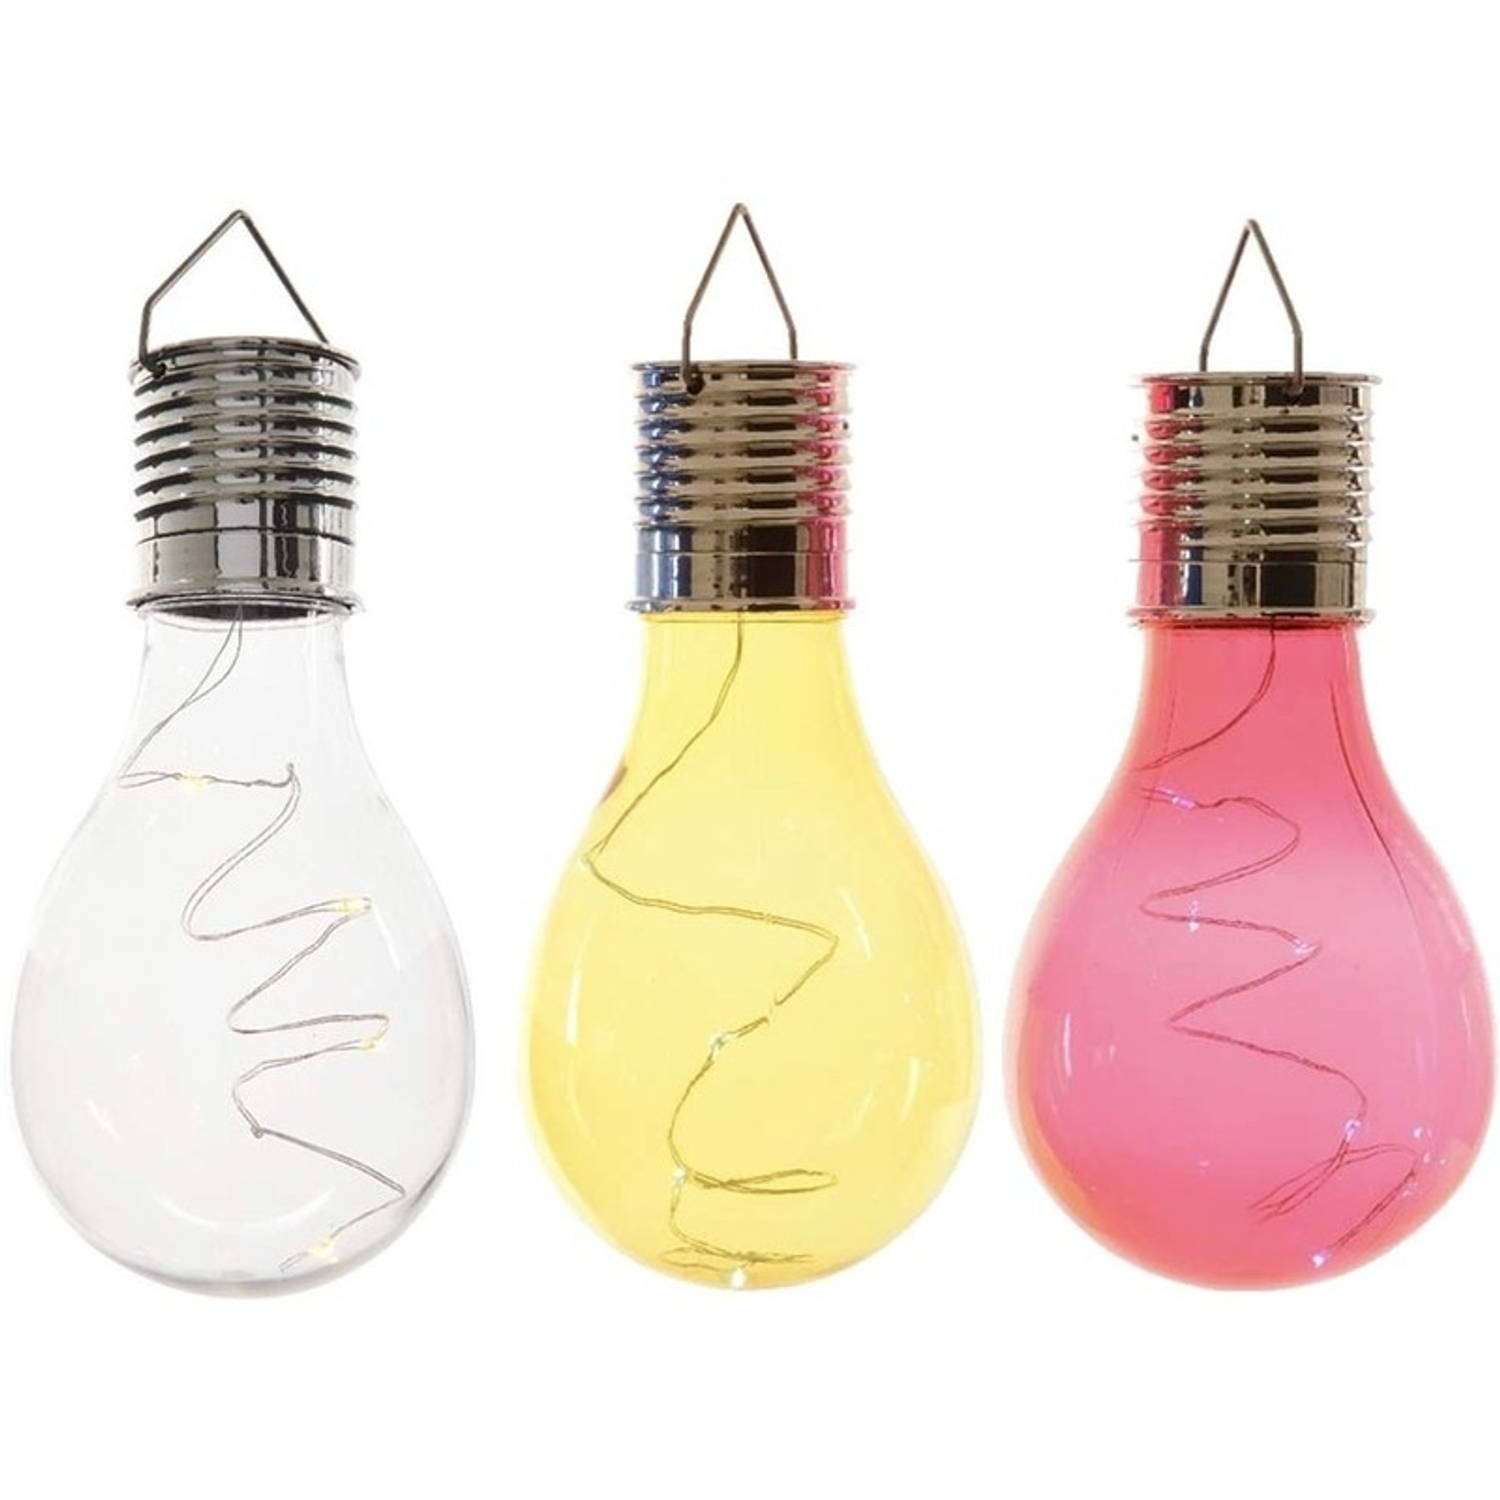 3x Buitenlampen/tuinlampen lampbolletjes/peertjes 14 cm transparant/geel/rood - Buitenverlichting